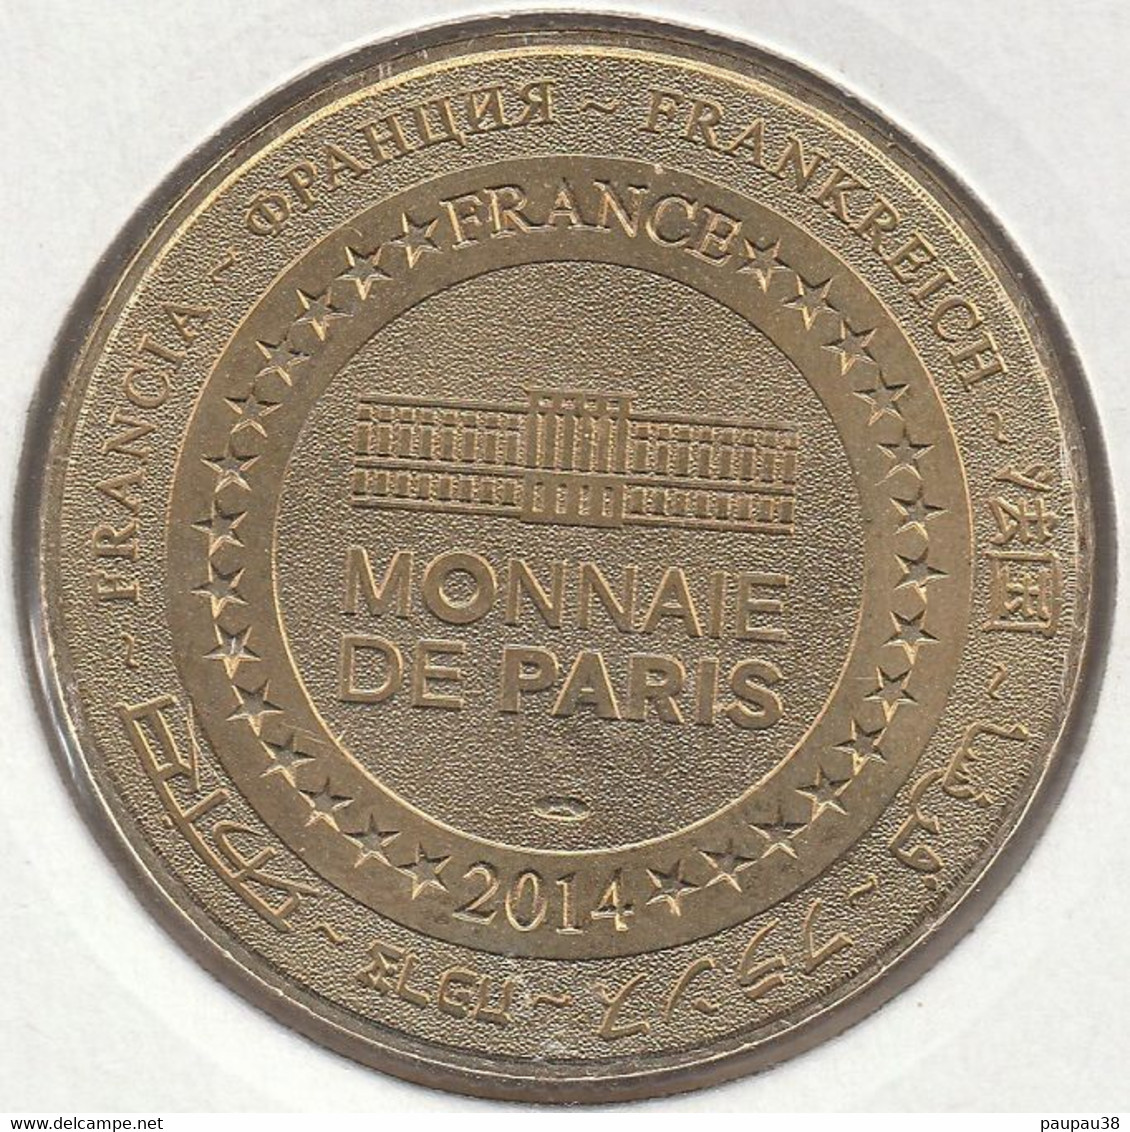 MONNAIE DE PARIS 2014 - 62 SAINT OMER La Coupole - Centre D’Histoire Et Planétarium 3 D - 2014